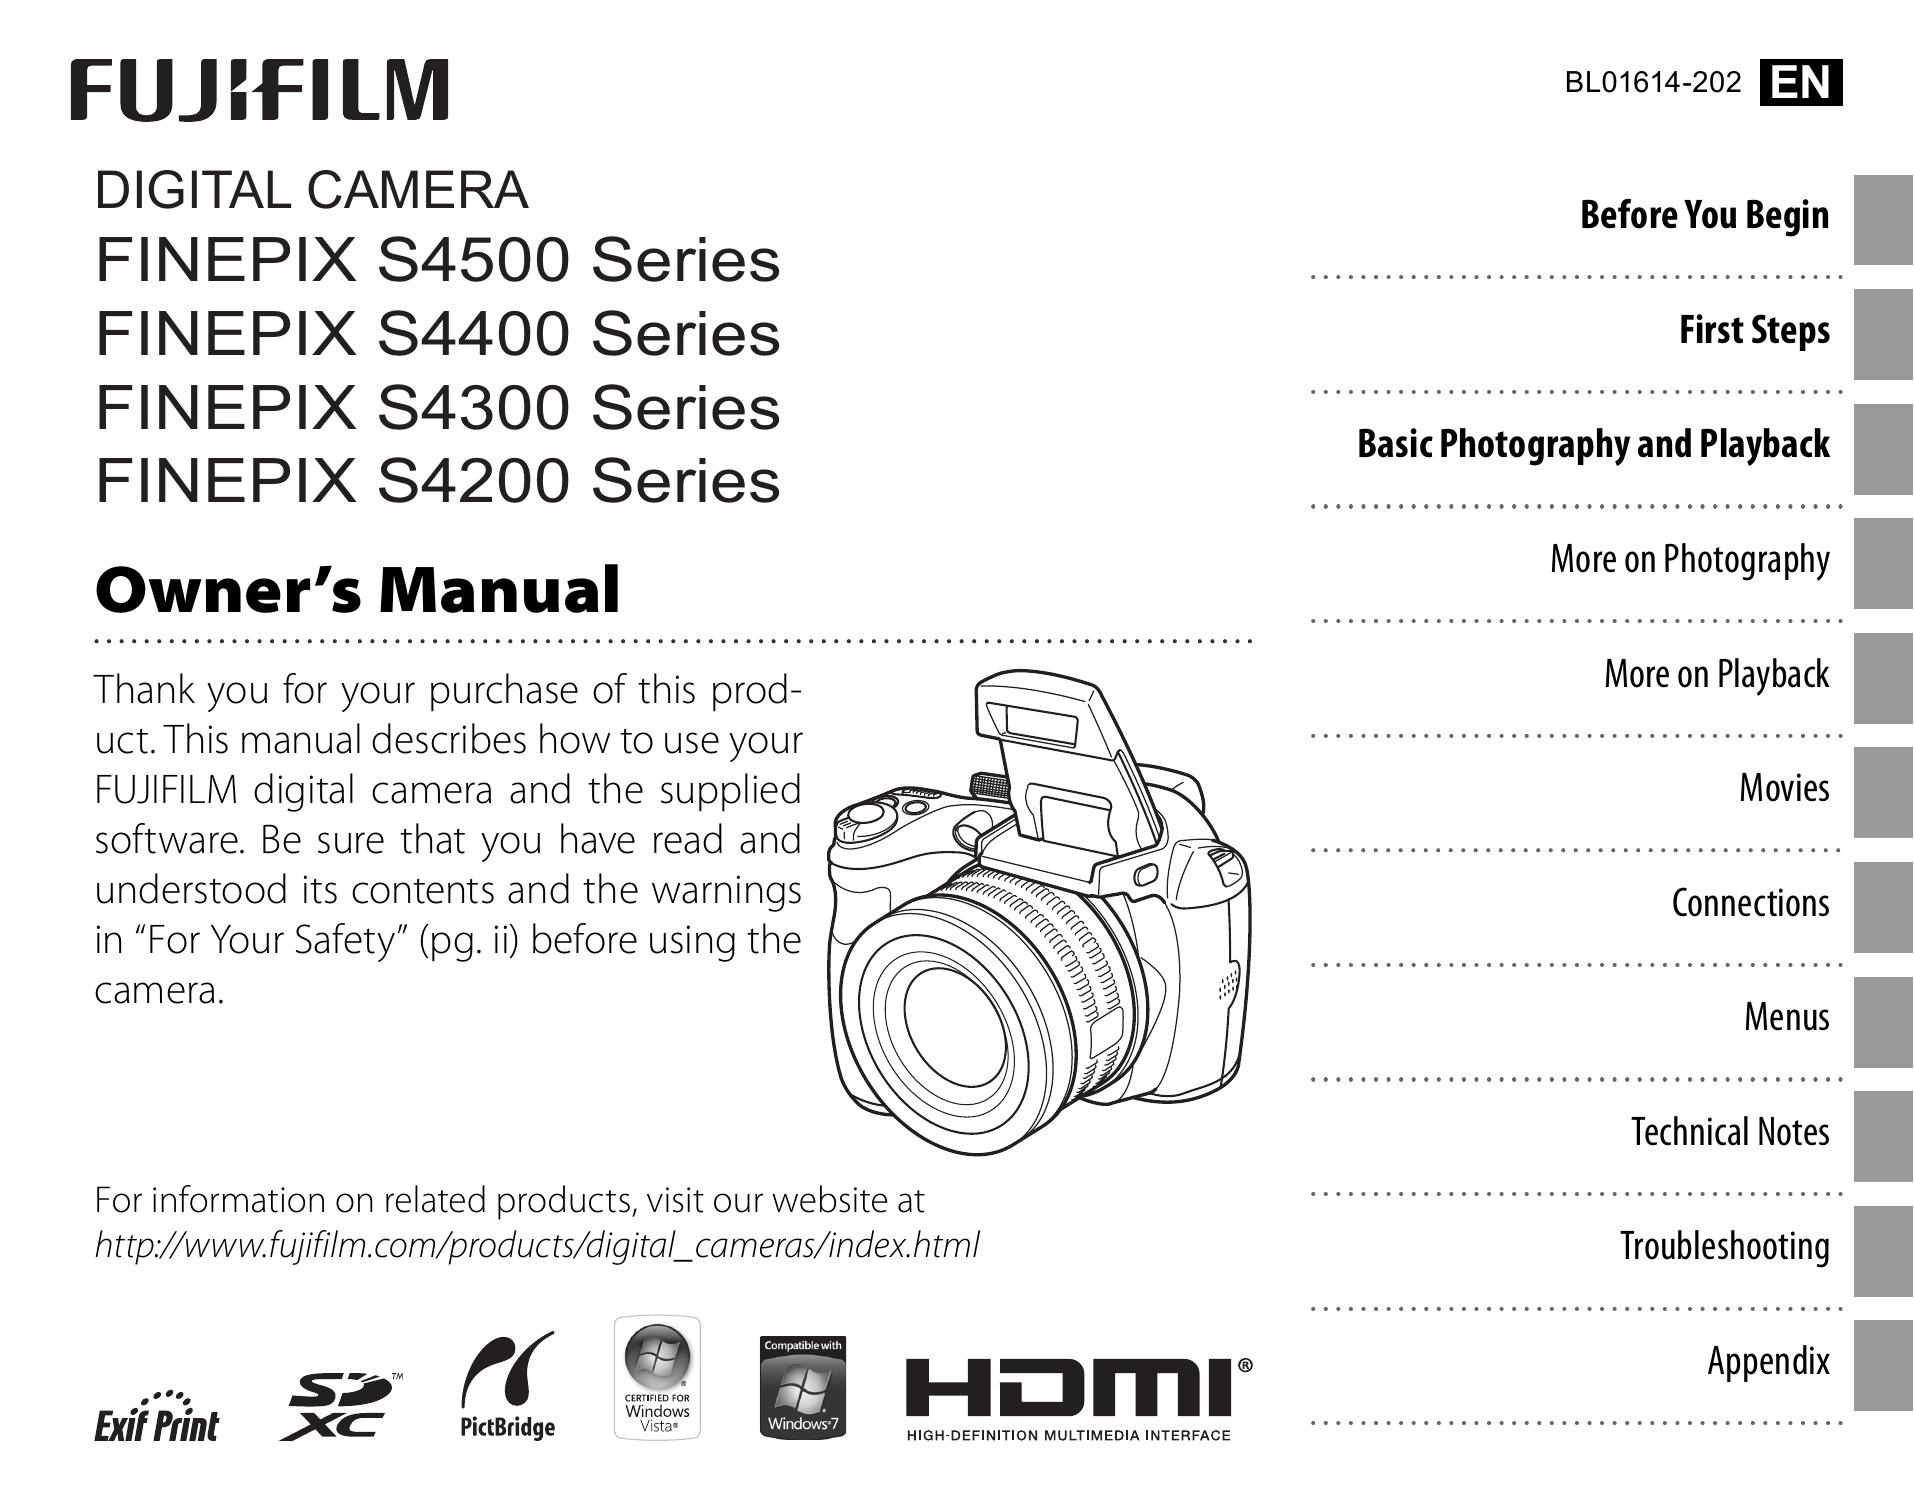 FujiFilm 16201333 KIT Digital Camera User Manual